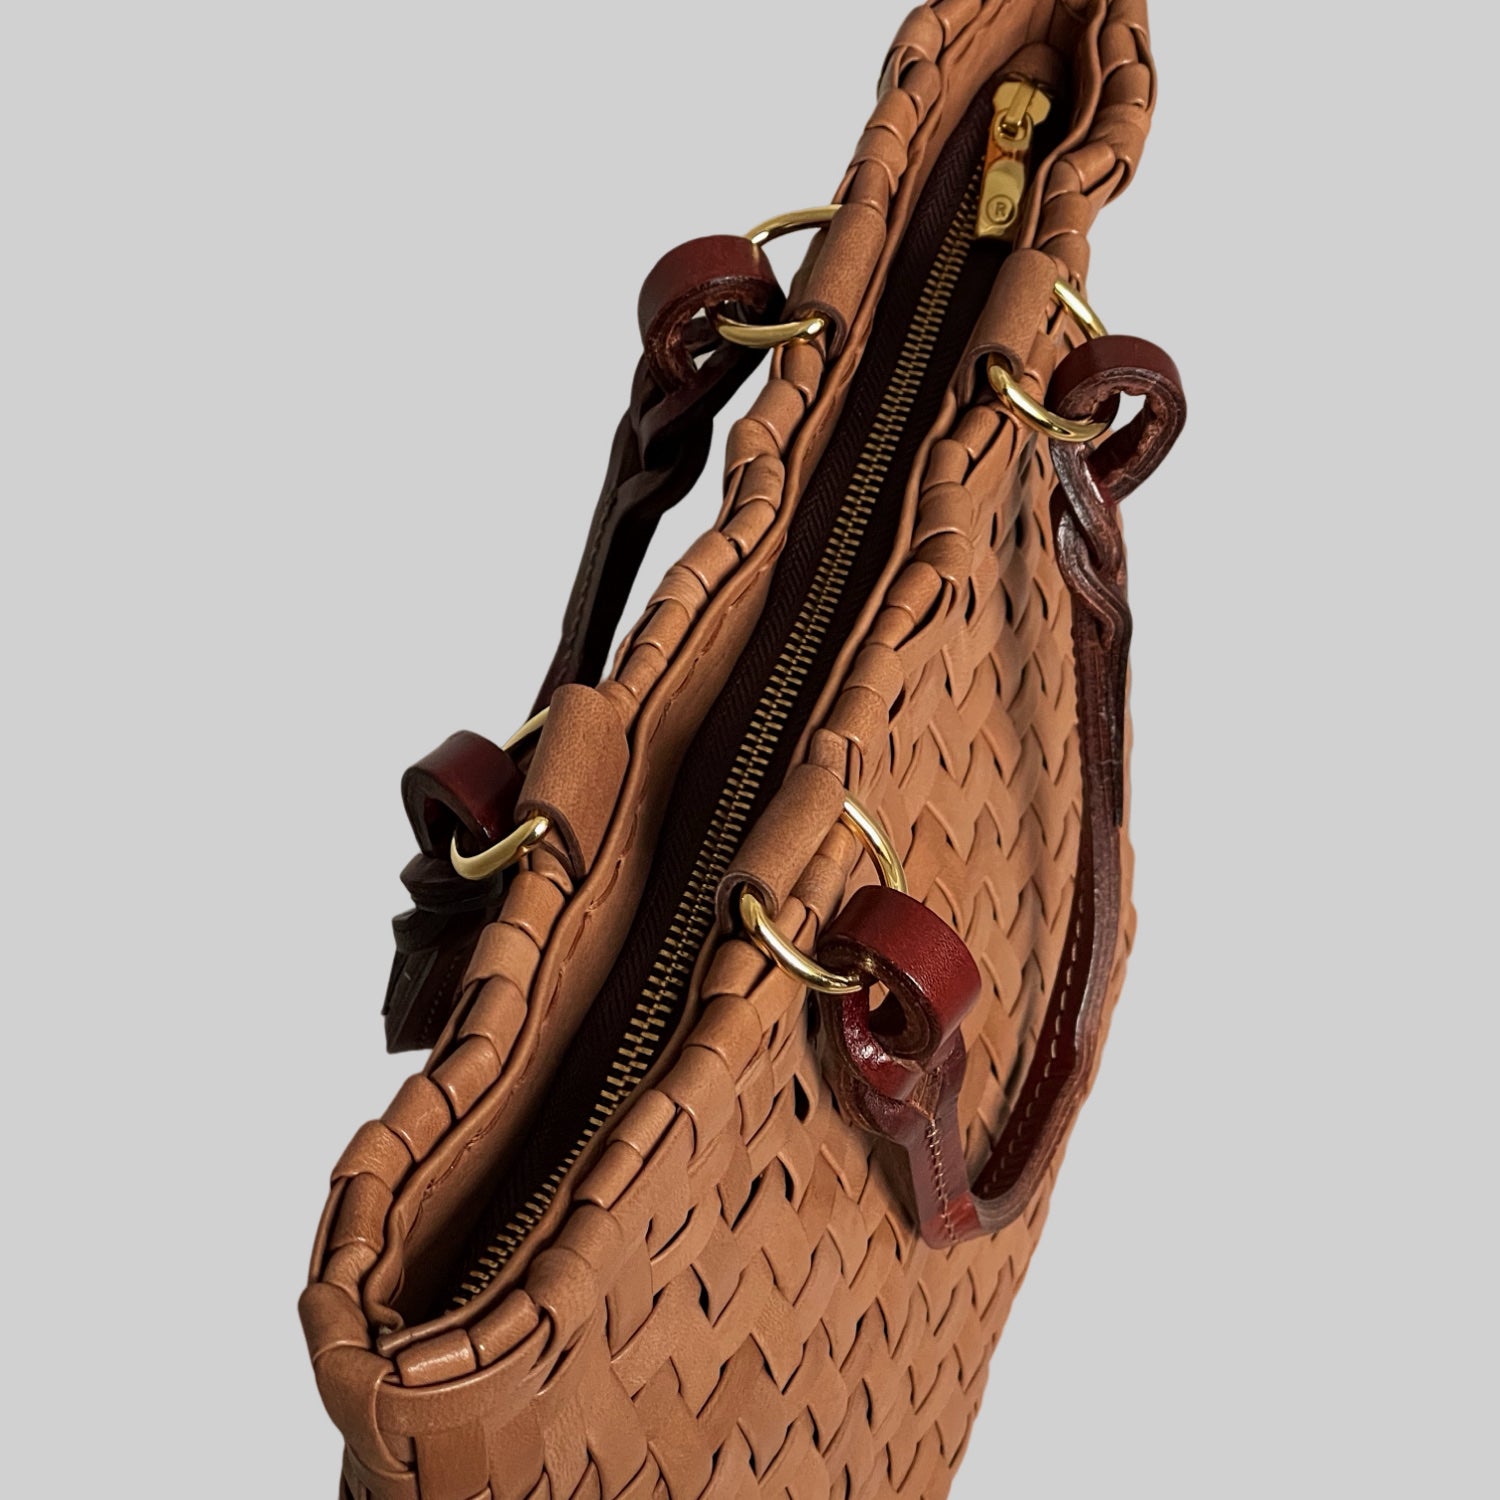 Ribichini Safari Lady-vesken i cognac, med flettet lammeskinn og glidelås, kombinerer stil og funksjonalitet på en elegant måte.